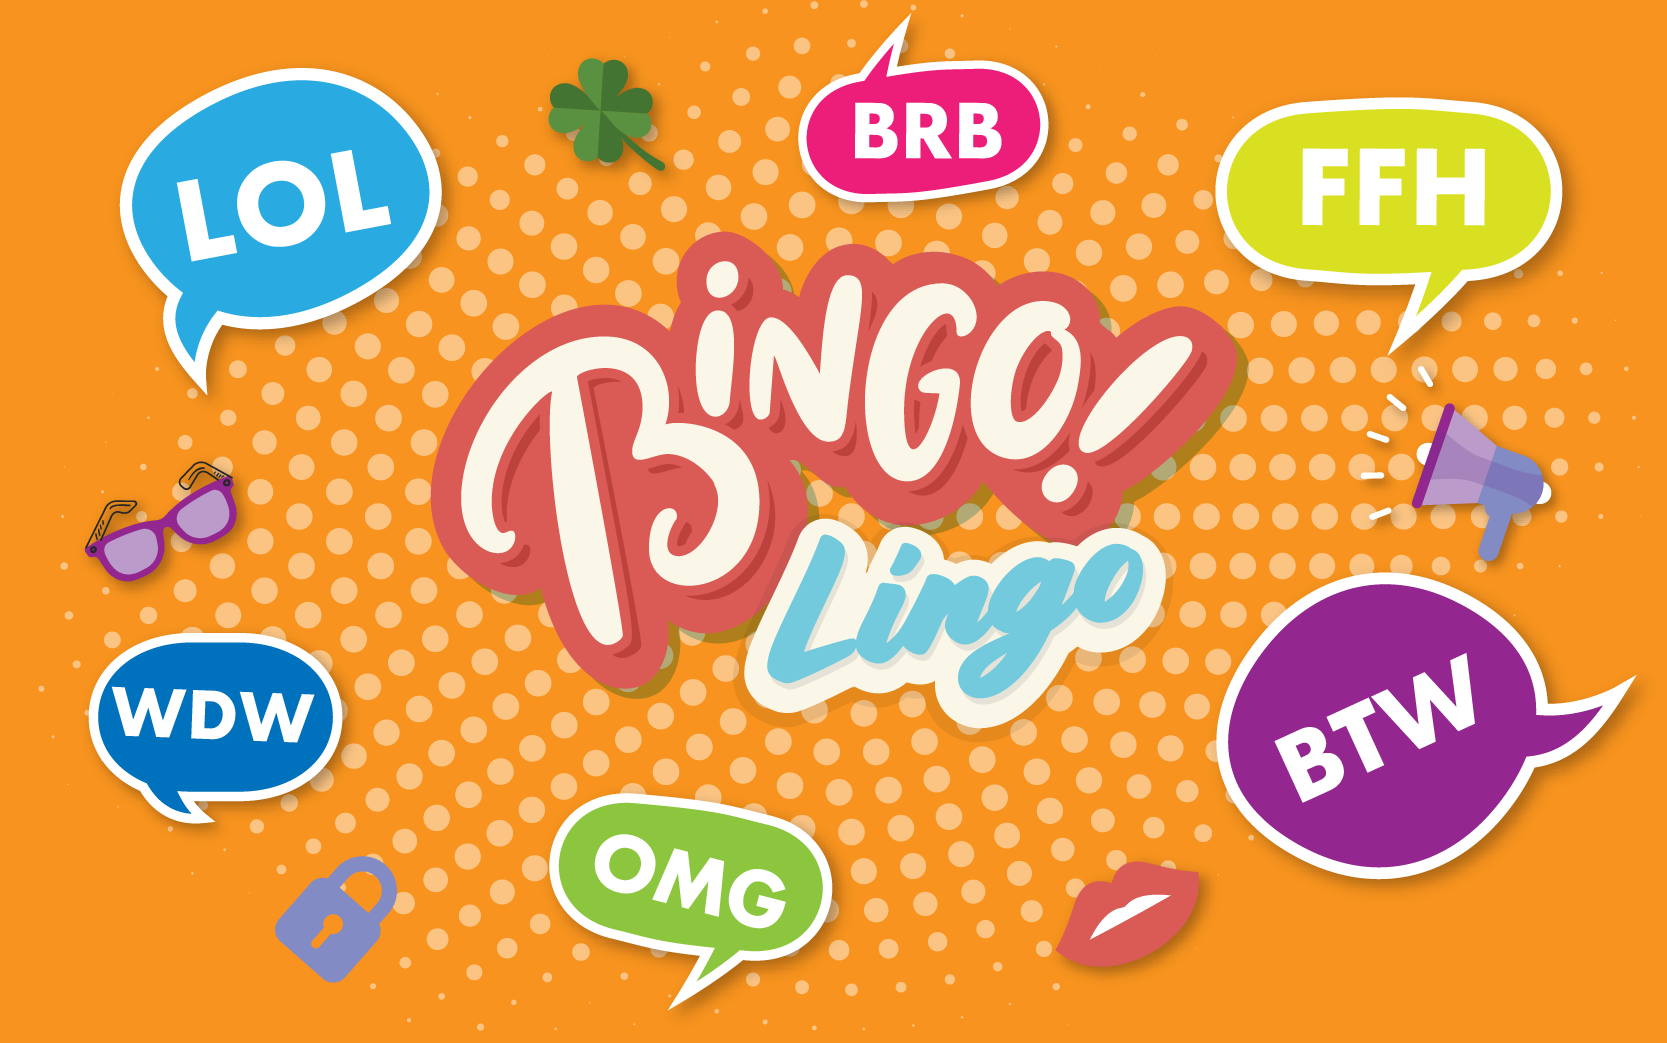 Bingo Lingo terminology - bingo terms and slang